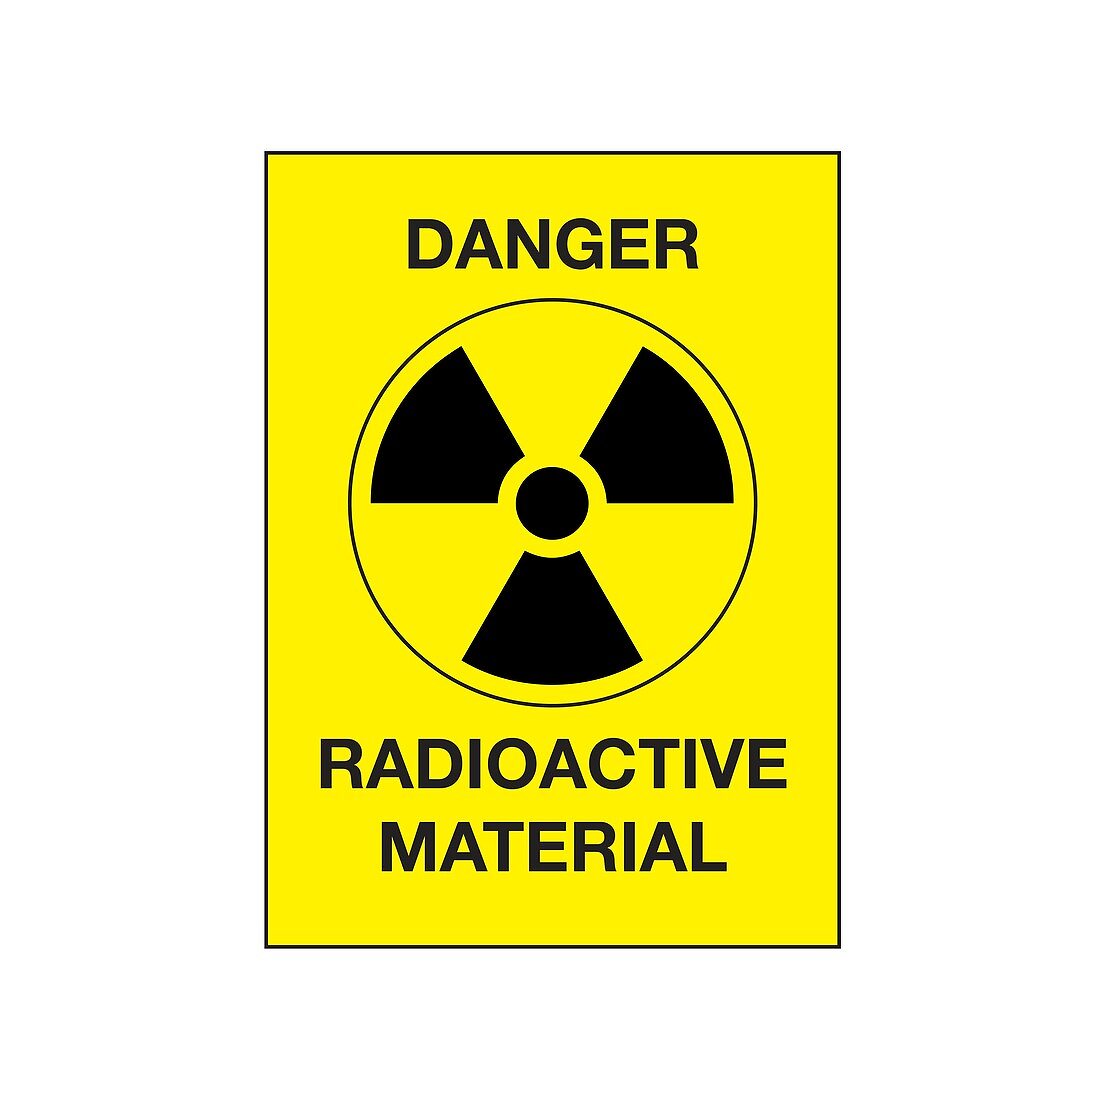 Radiation warning sign, illustration